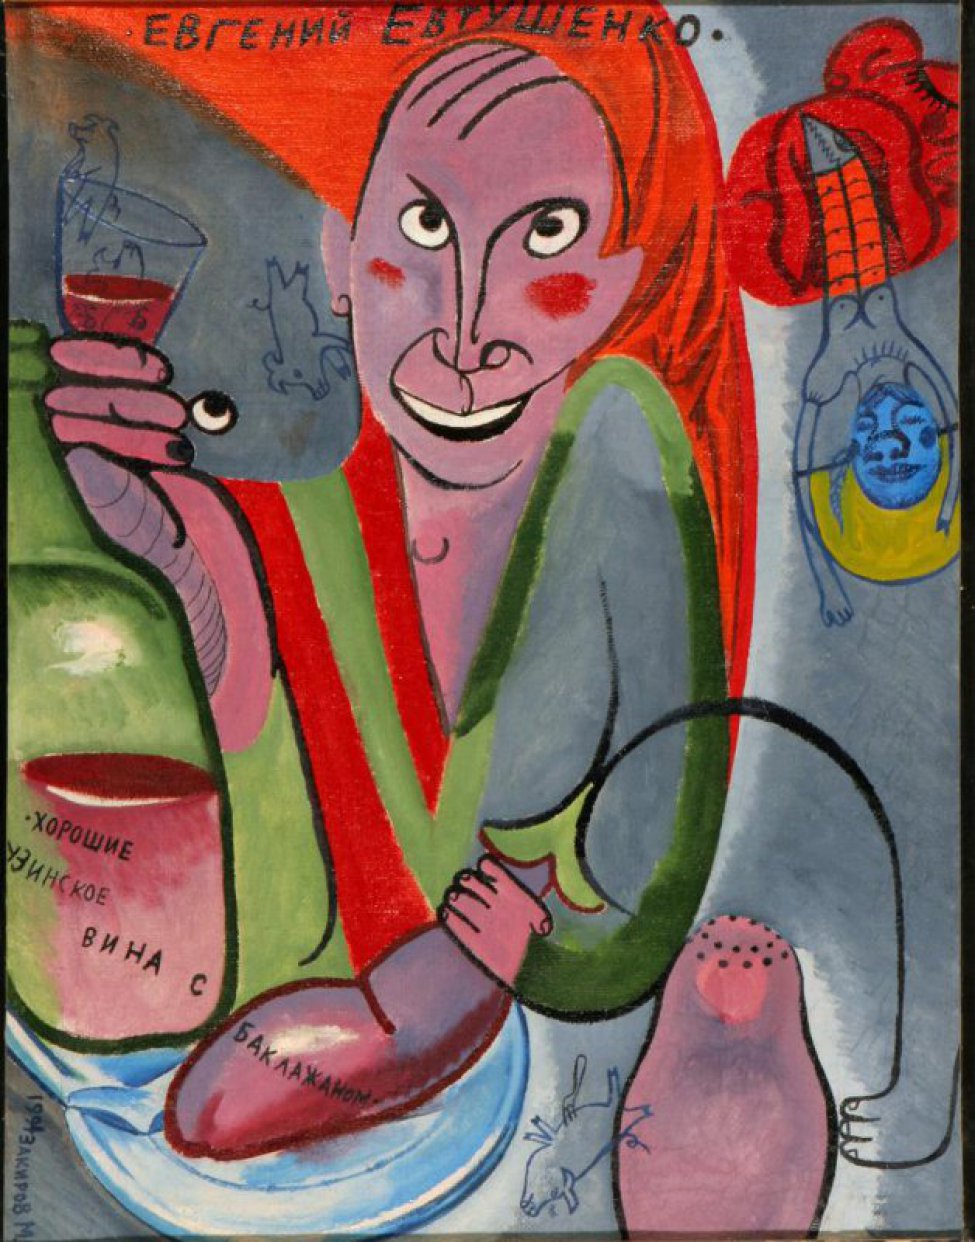 Поясное изображение мужчины с баклажаном в левой руке, с рюмкой - в правой. На красном фрагменте фона надпись: "Евгений Евтушенко". На изображенной бутылке надпись: «хорошие грузинские вина с баклажаном».